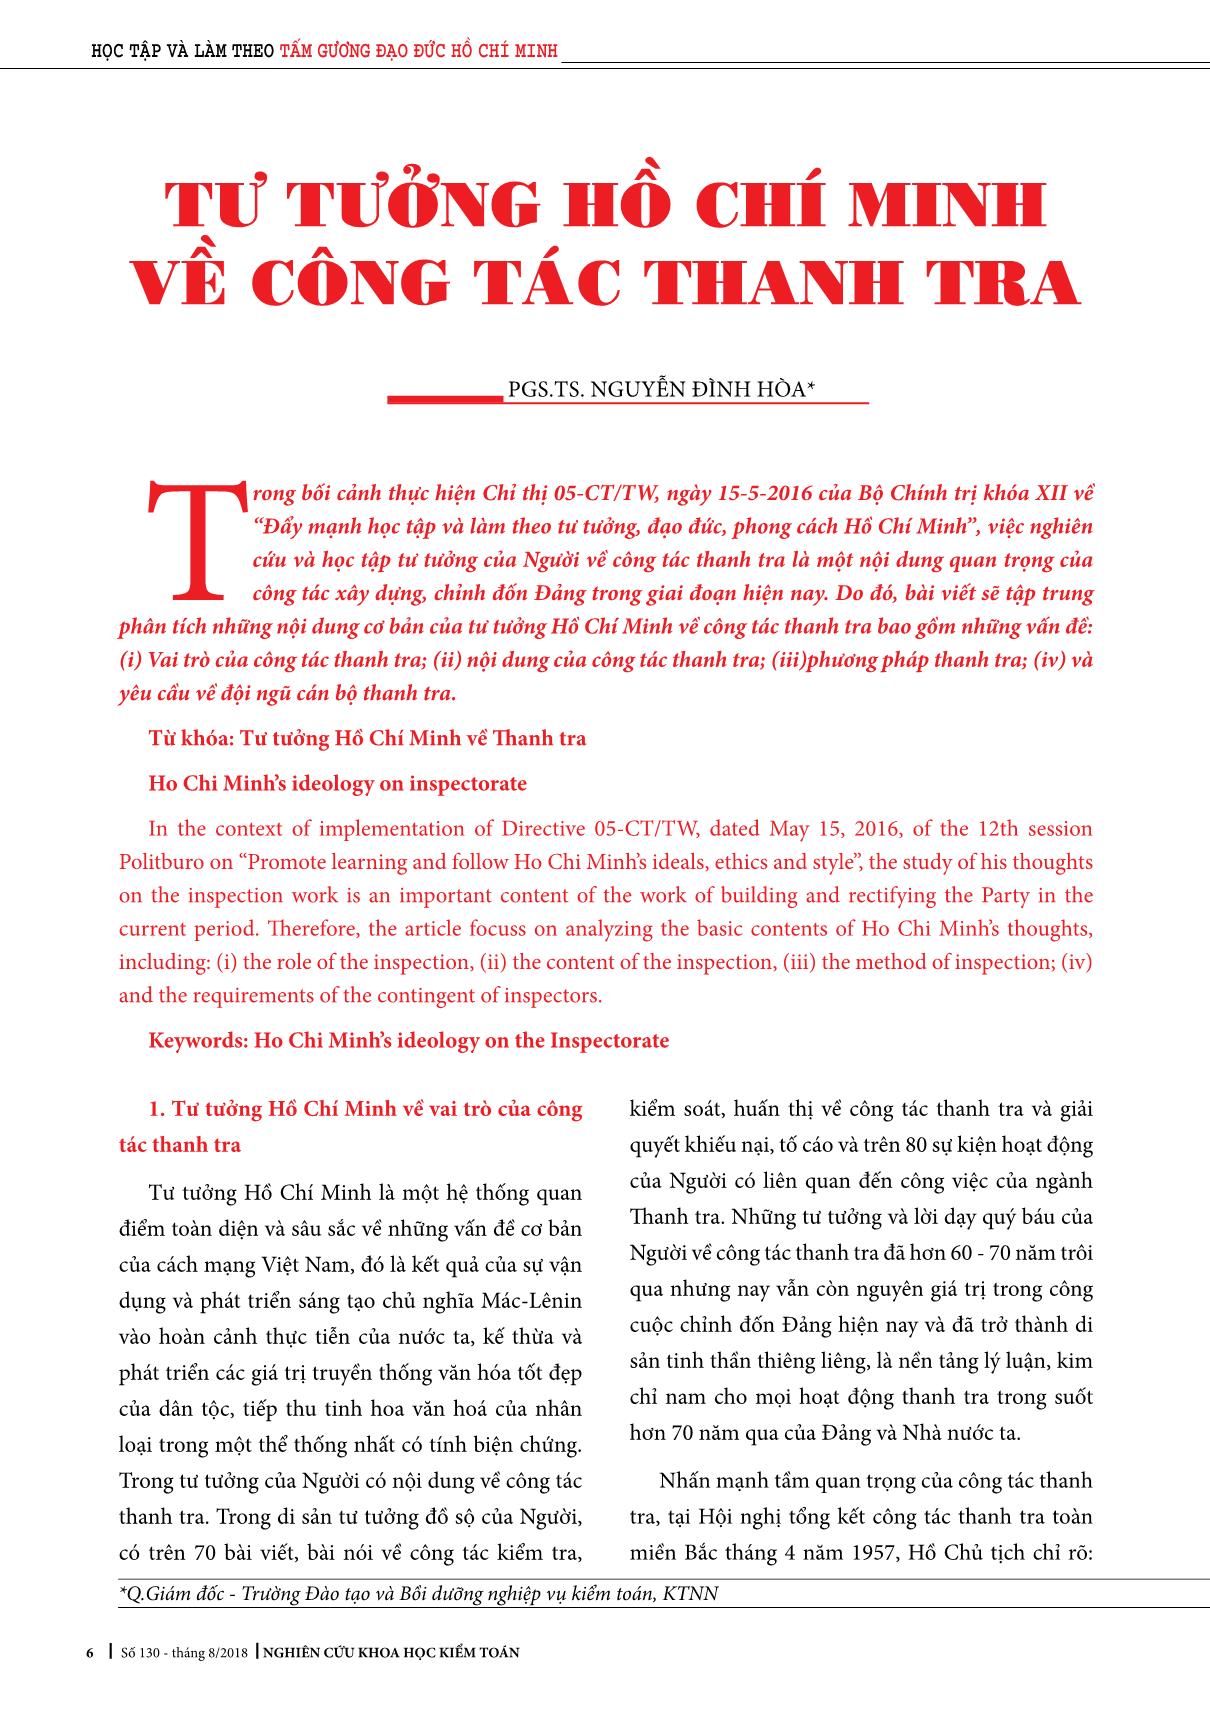 Tư tưởng Hồ Chí Minh về công tác thanh tra trang 1